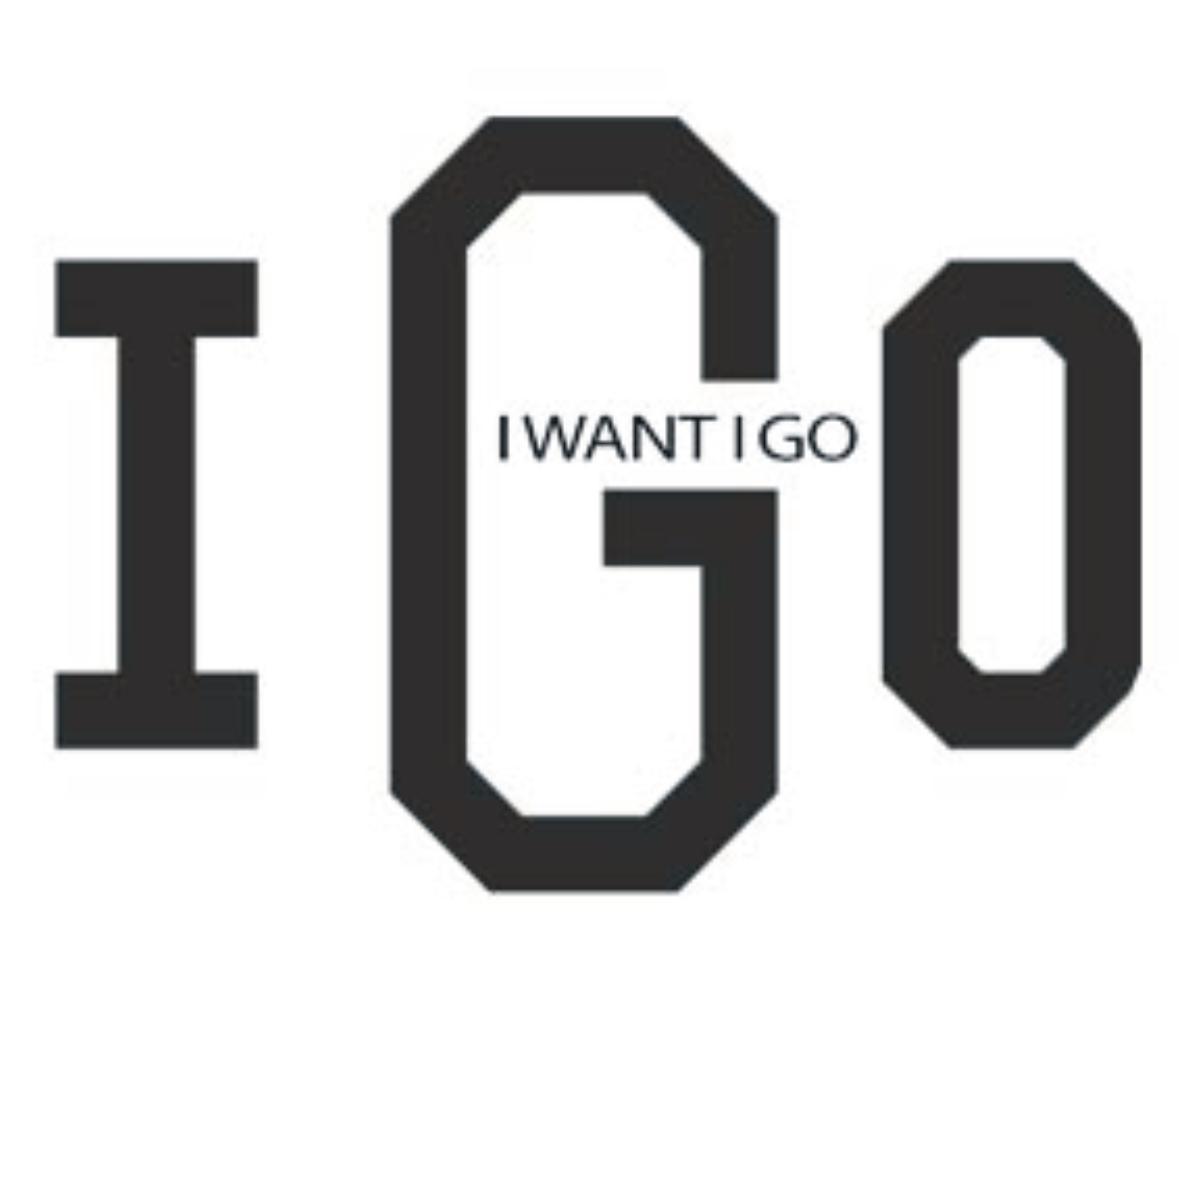 IGO I WANT I GO